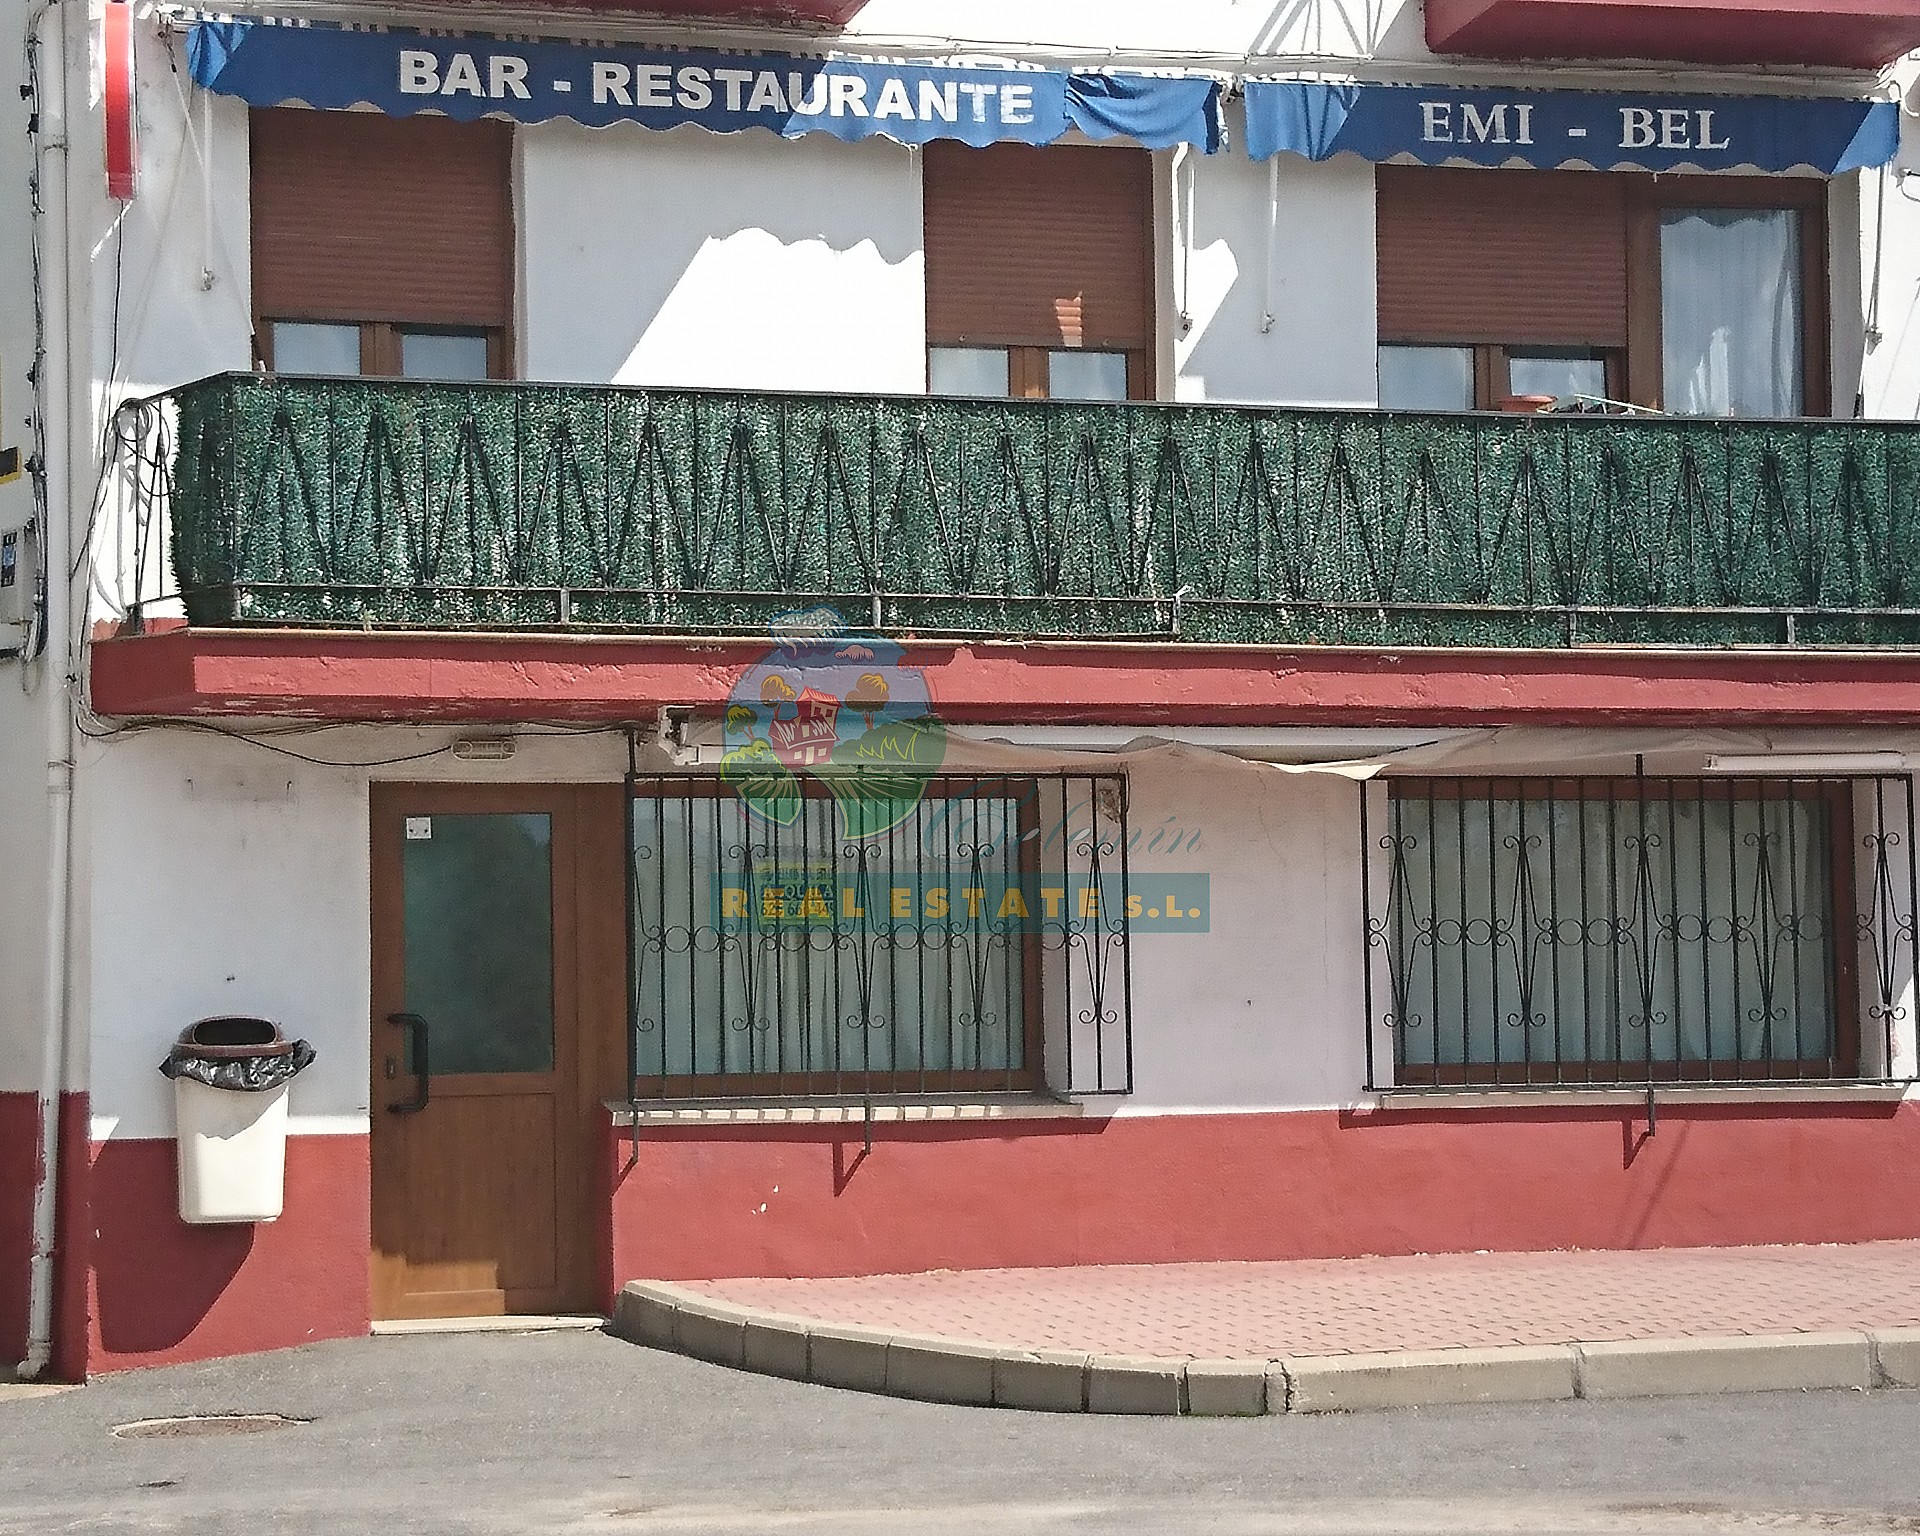 Bar business in Sierra de Gredos.